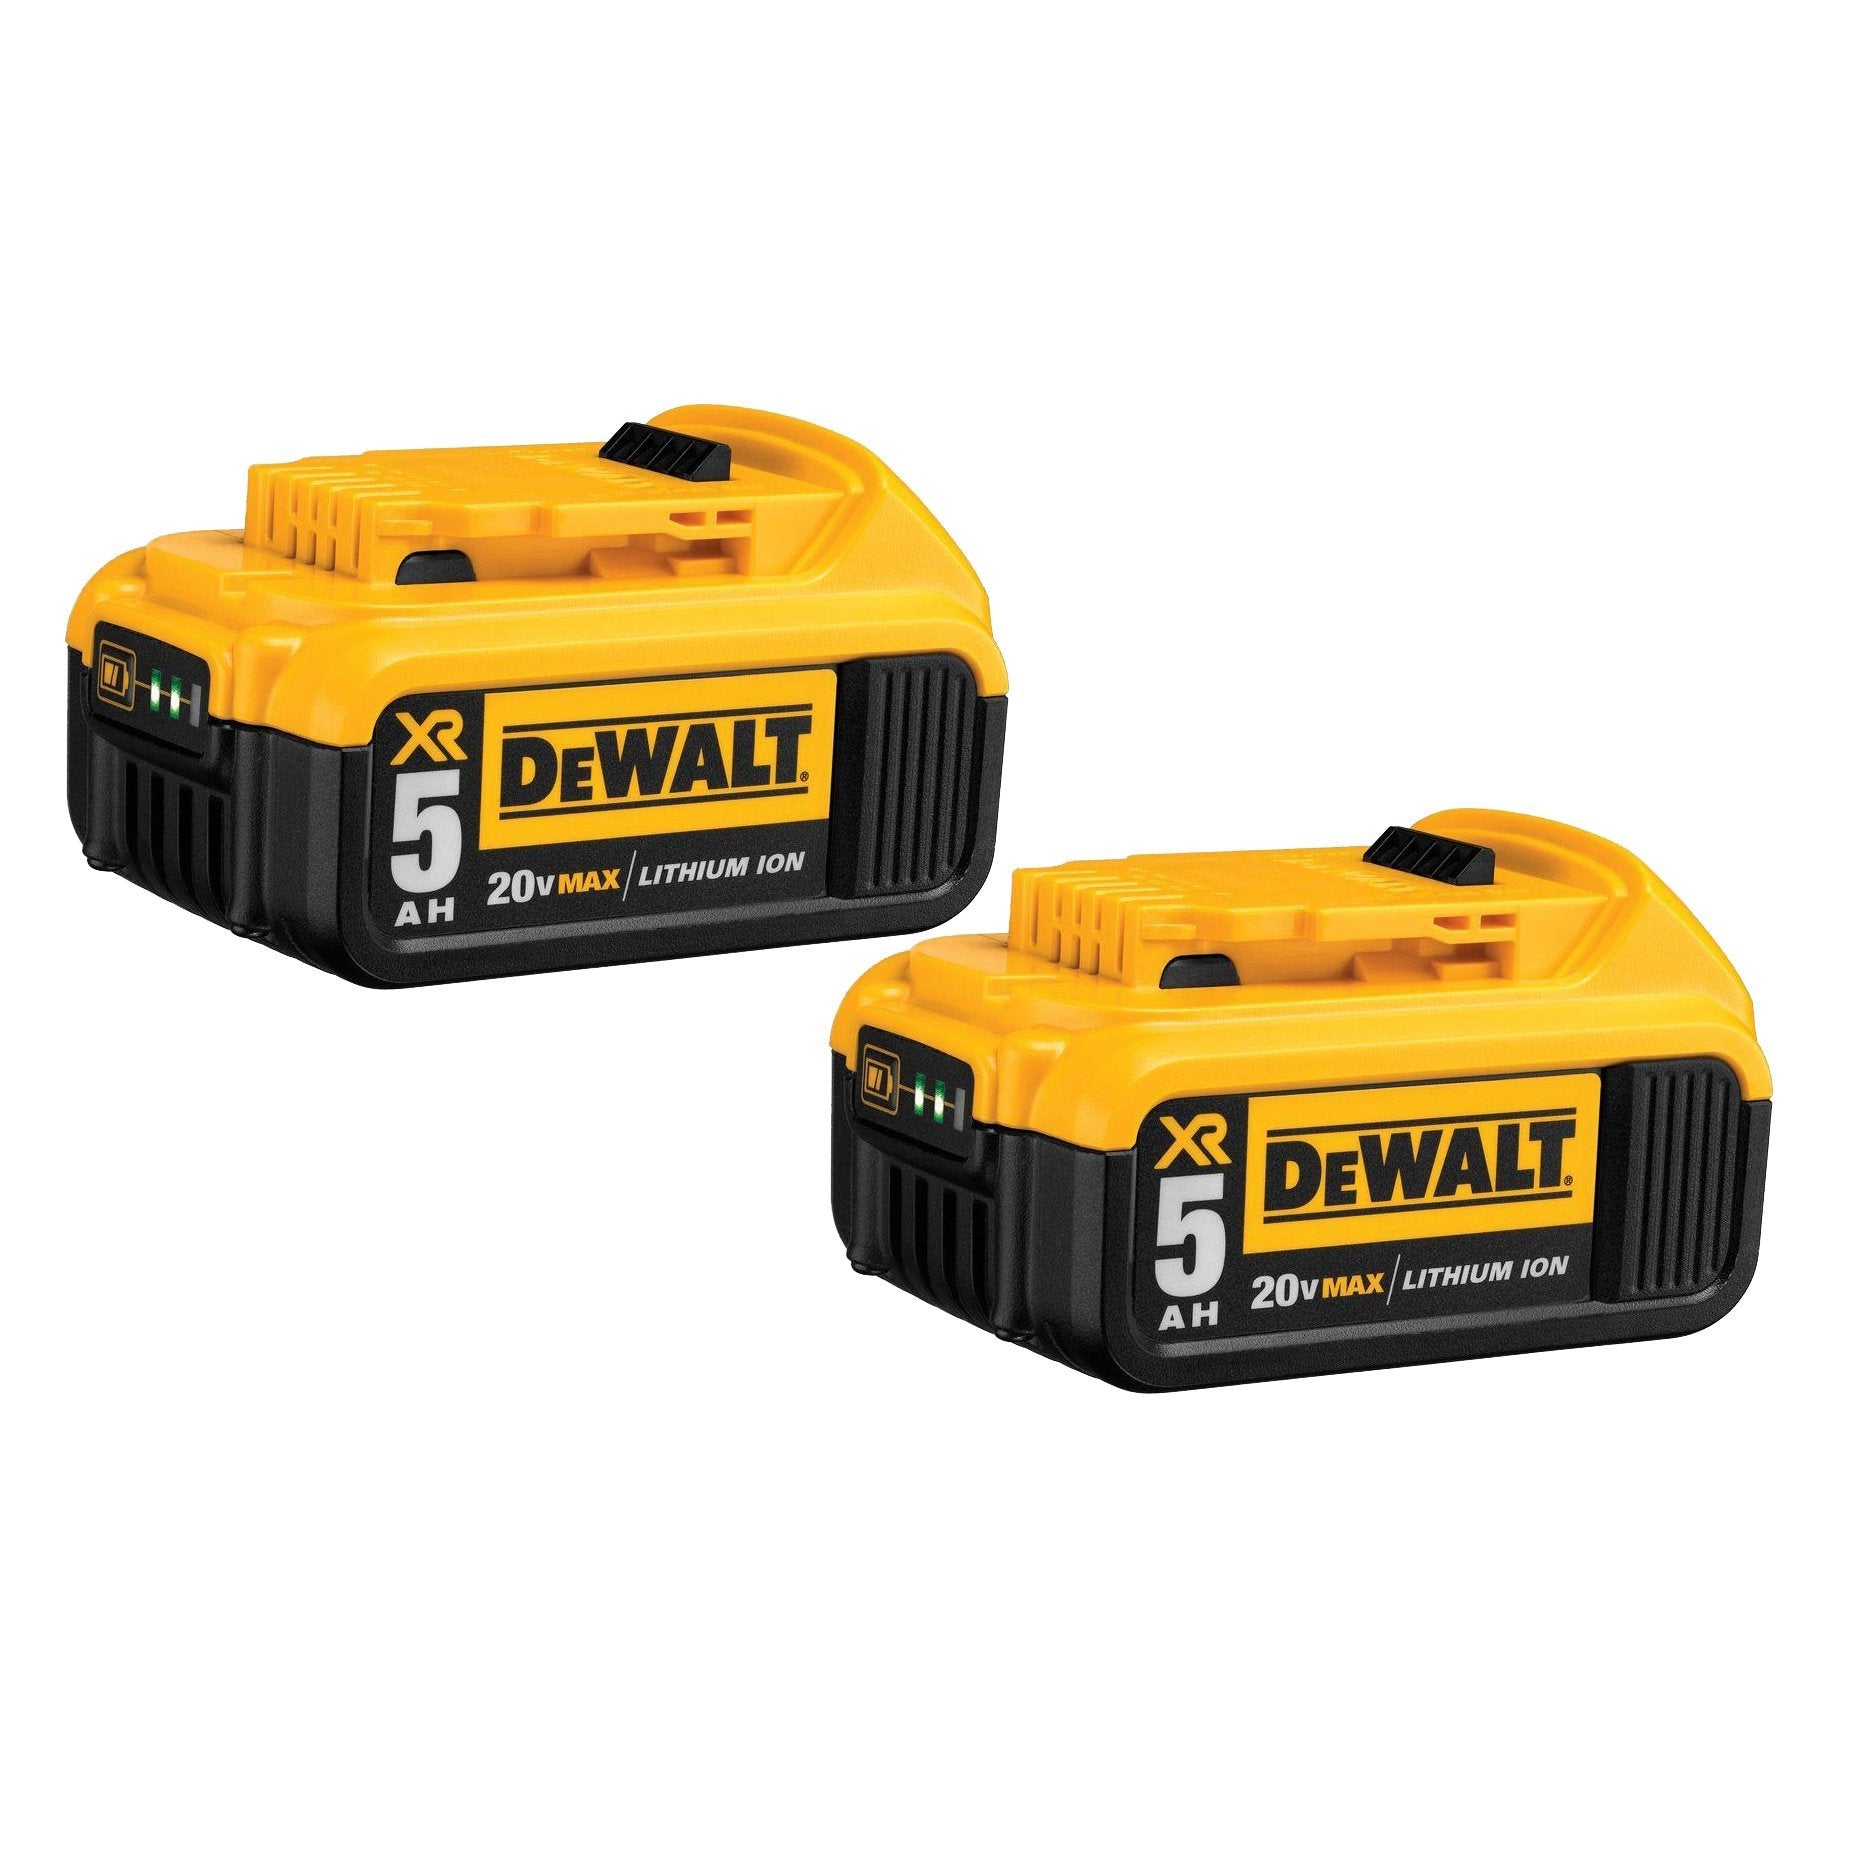 Dewalt - 18V 5.0Ah XR Lithium-Ion Battery, Shop Today. Get it Tomorrow!